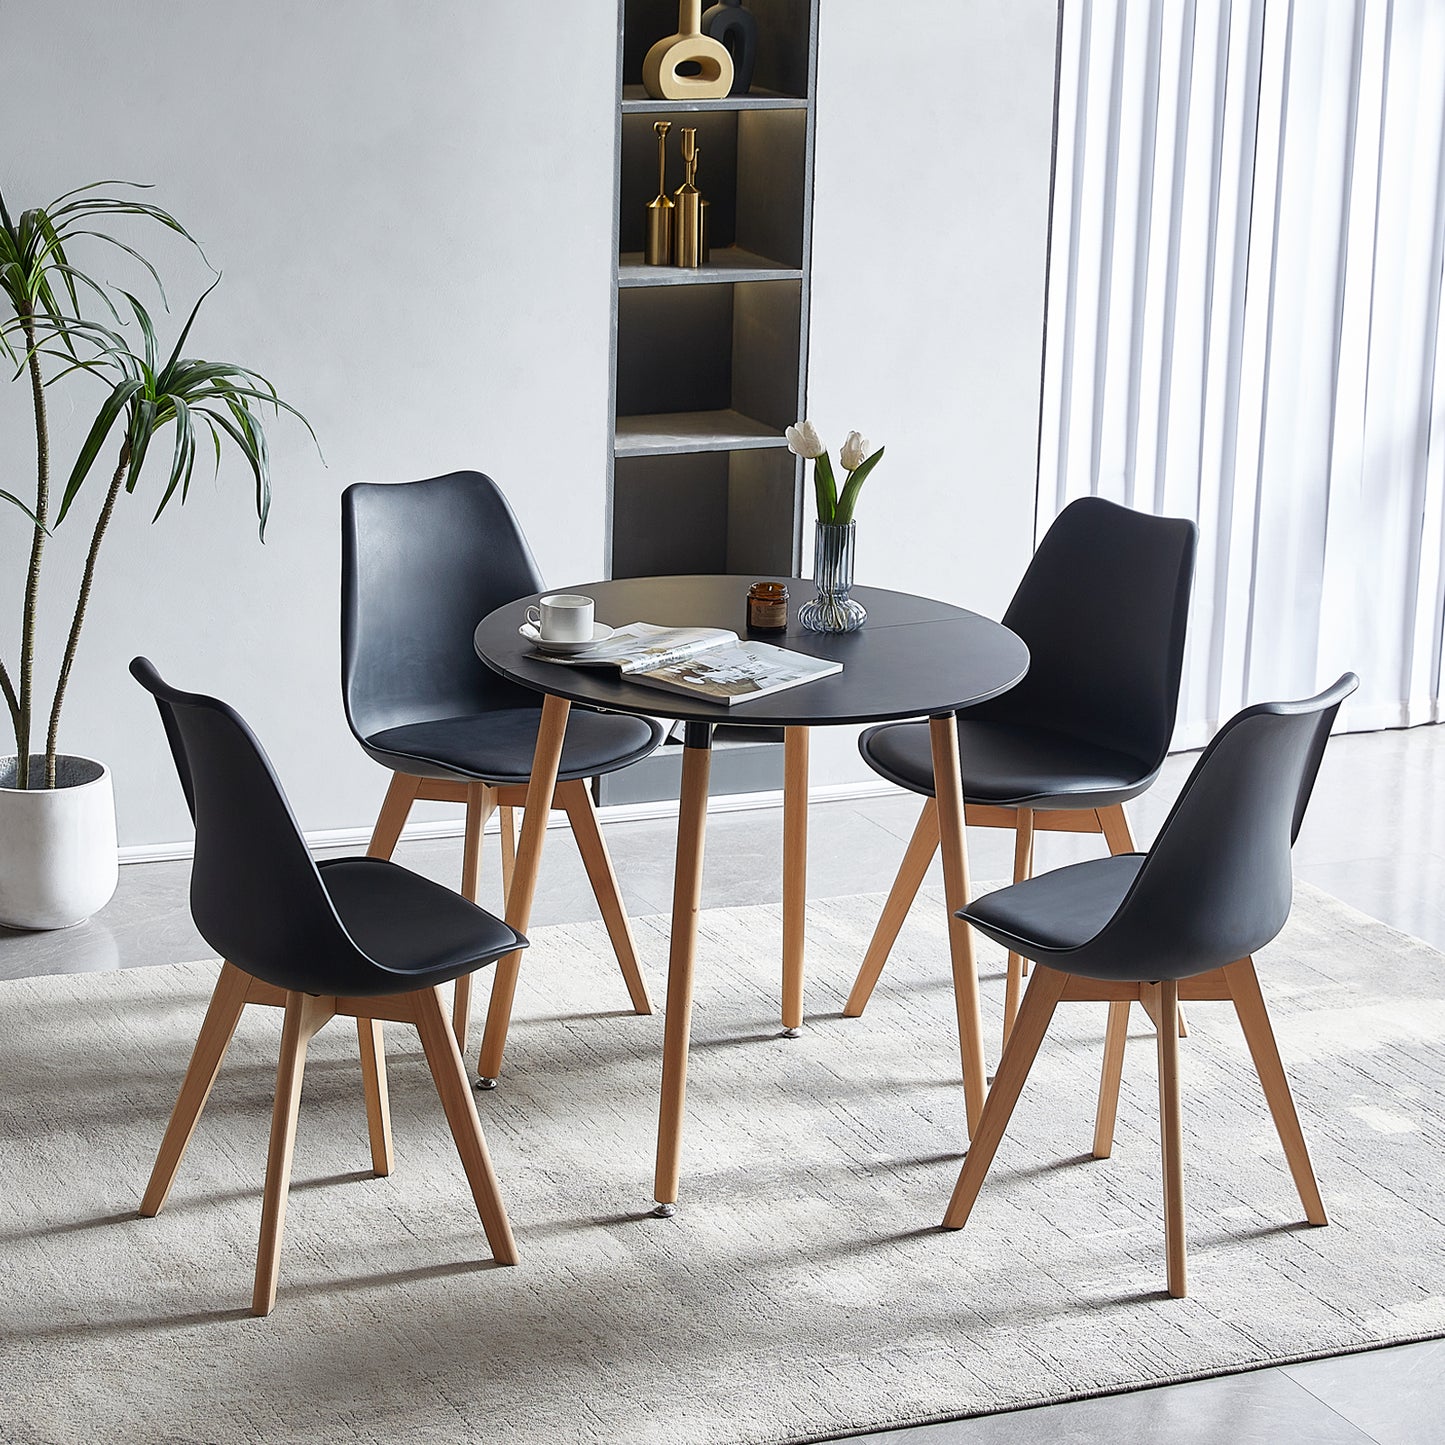 Ensemble table et chaises - Table Ronde de Cuisine avec Pieds en Bois et 4 Chaises Scandinaves Noires, Dimensions 54*54*82cm